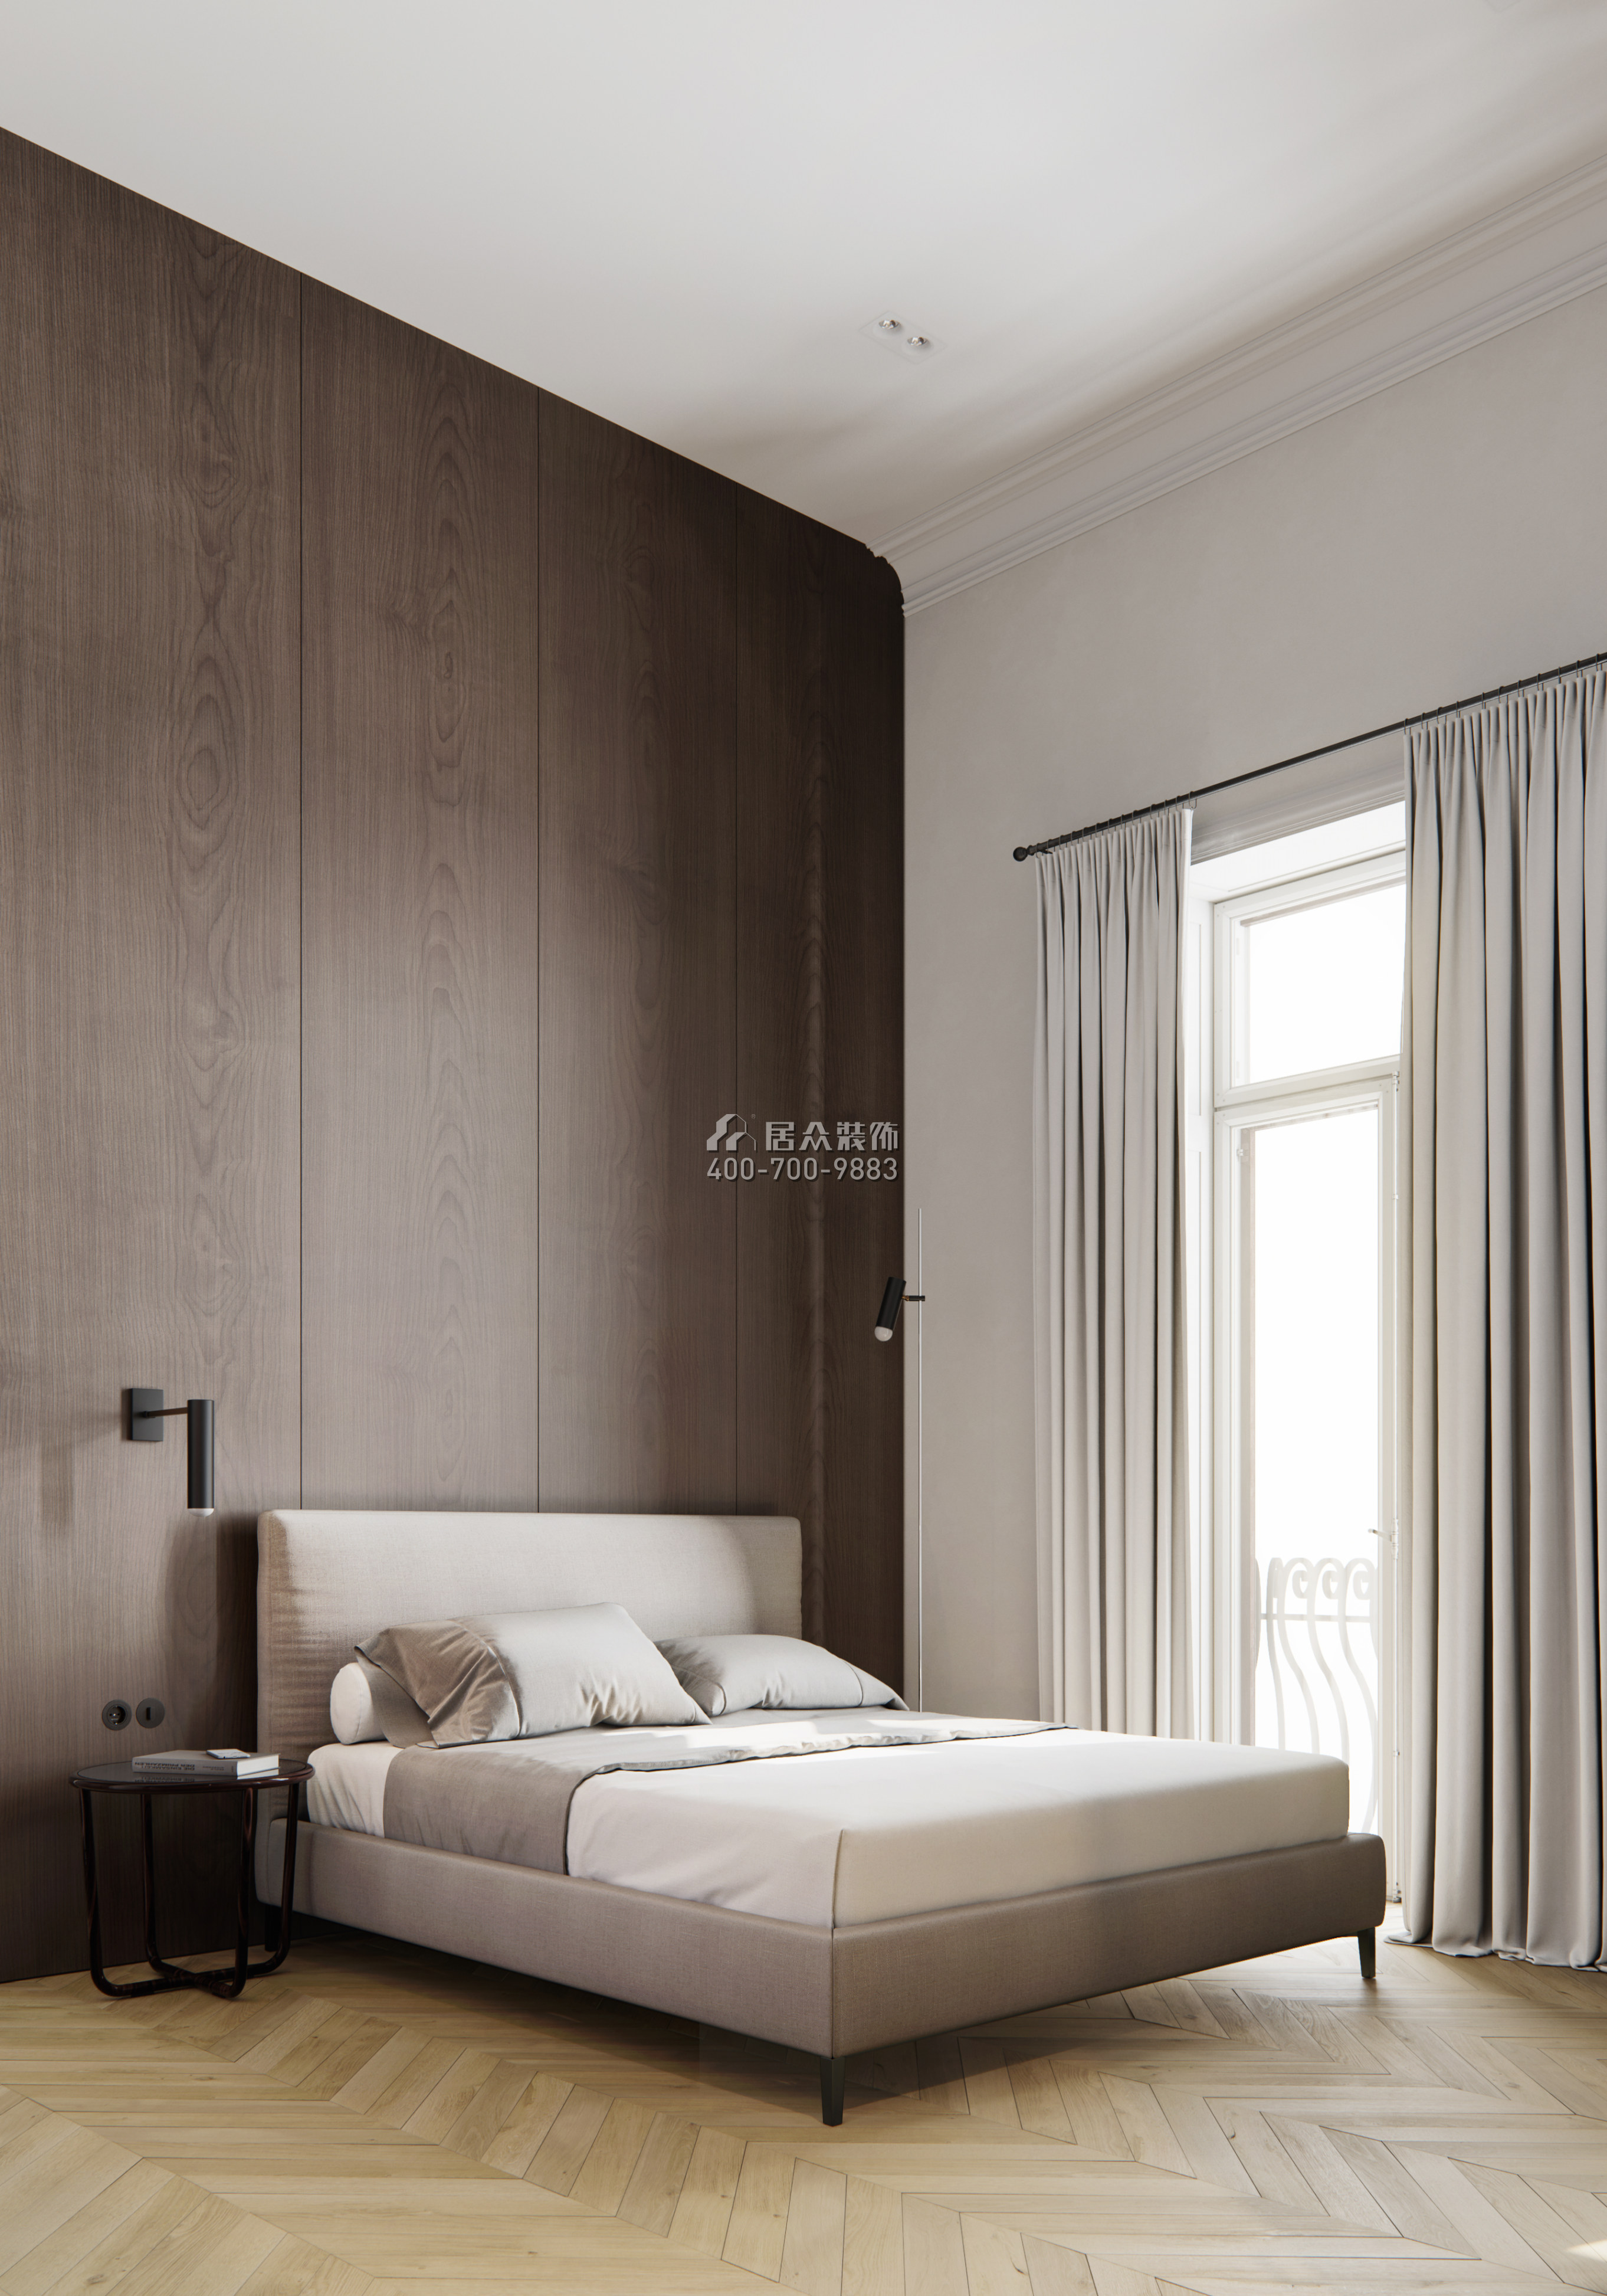 自建房120平方米现代简约风格平层户型卧室装修效果图